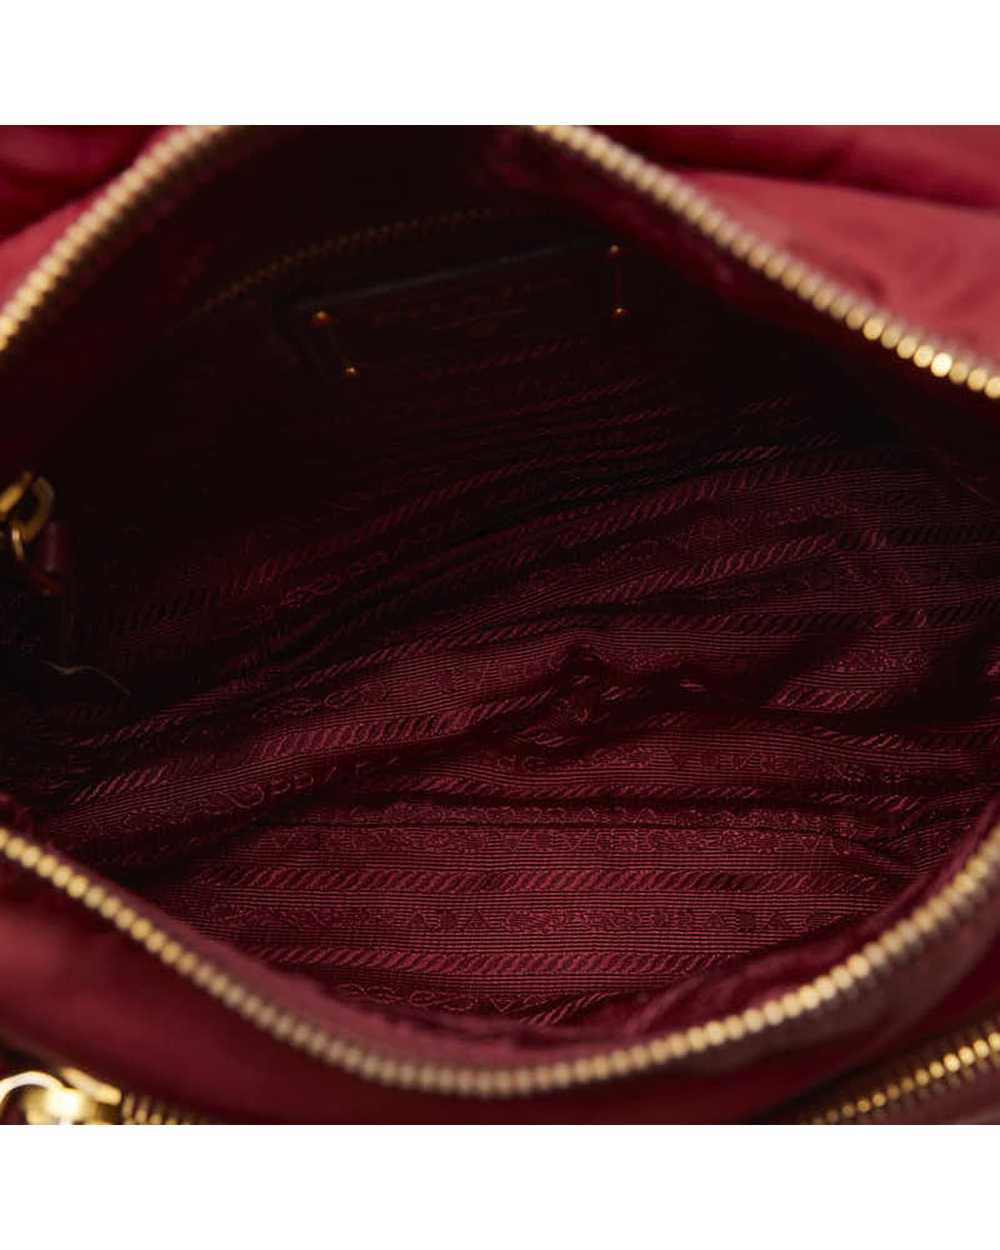 Prada Rose Gold Tessuto Messenger Bag in AB Condi… - image 5